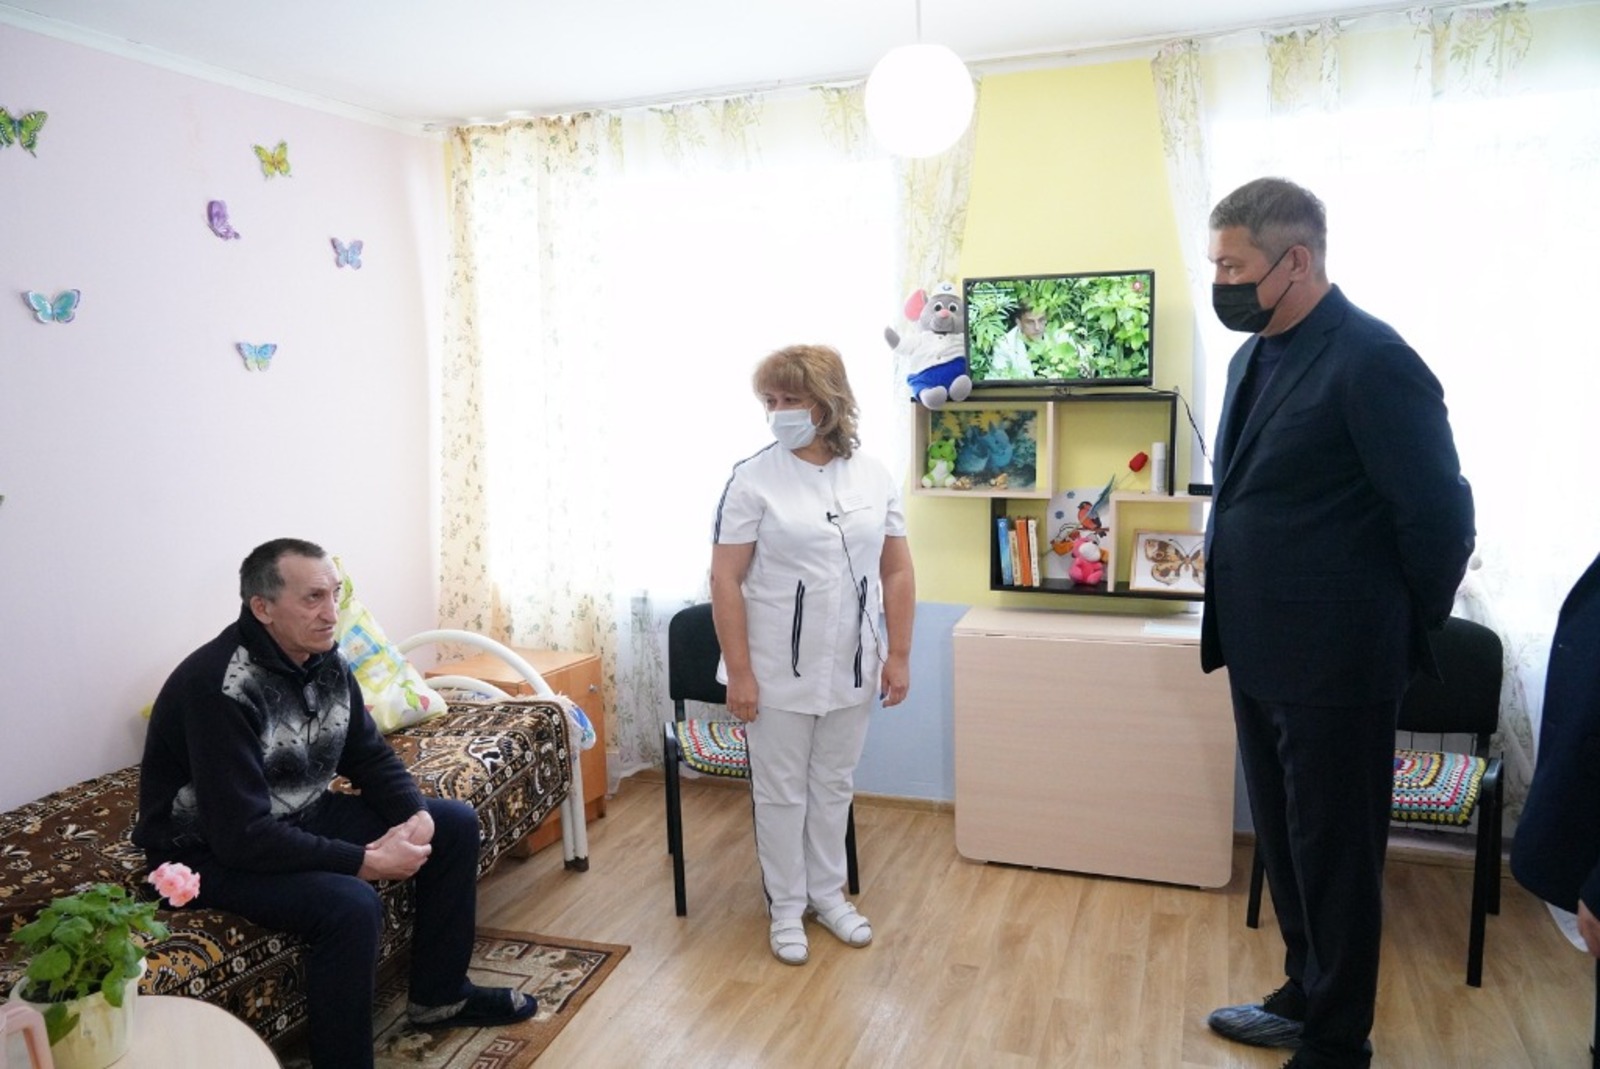 В Башкирии запустят проект долговременного ухода за пожилыми и инвалидами